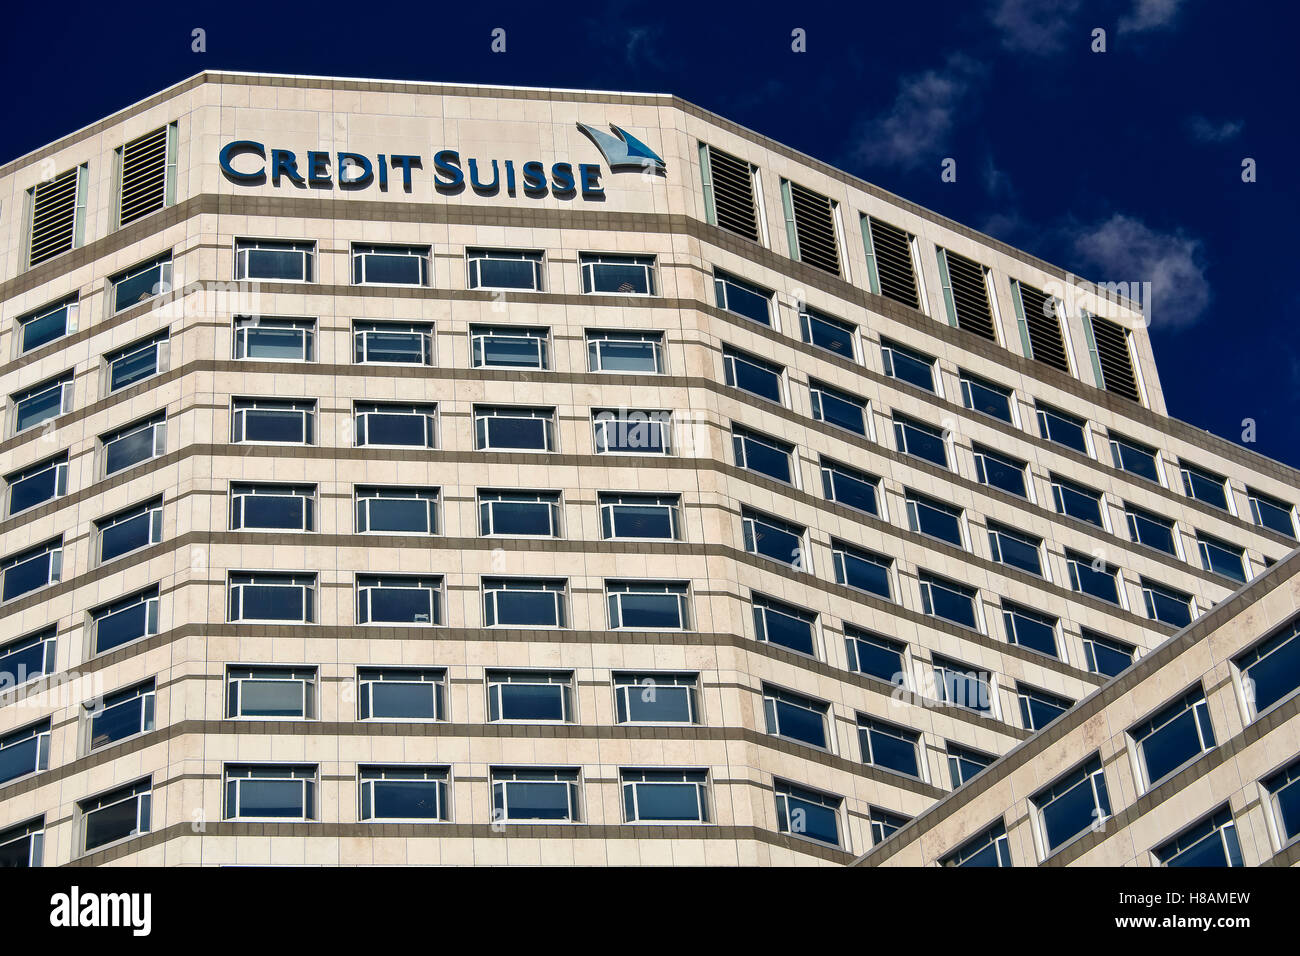 Credit Suisse Bank à Canary Wharf, centre financier. Quartier des affaires central. Île de Dogs, Docklands. Londres, Angleterre, Royaume-Uni, Europe Banque D'Images